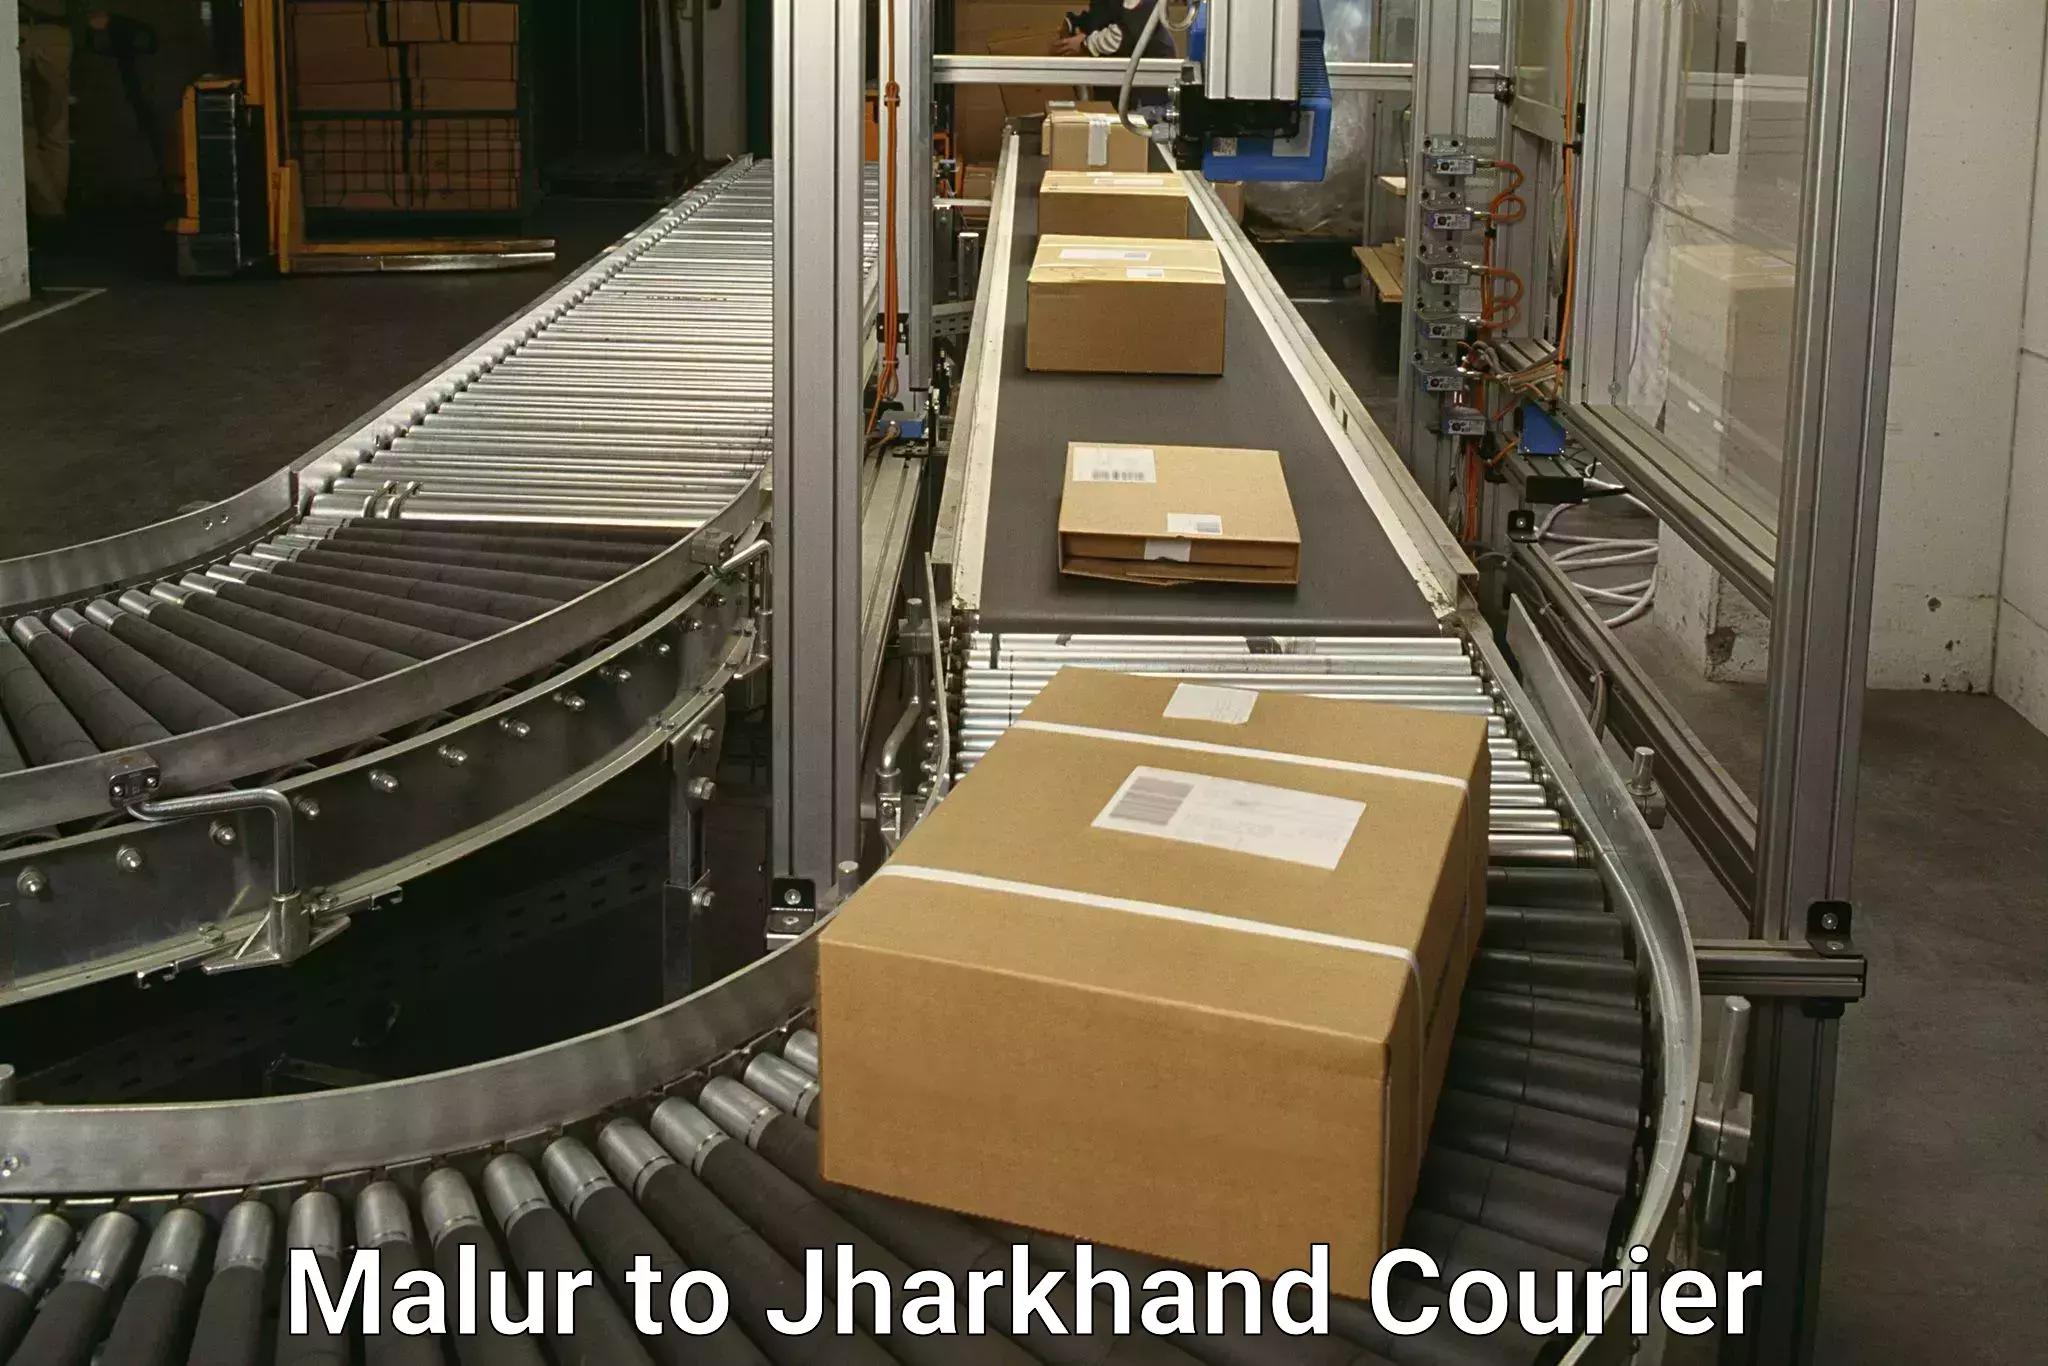 Global parcel delivery Malur to Jamshedpur